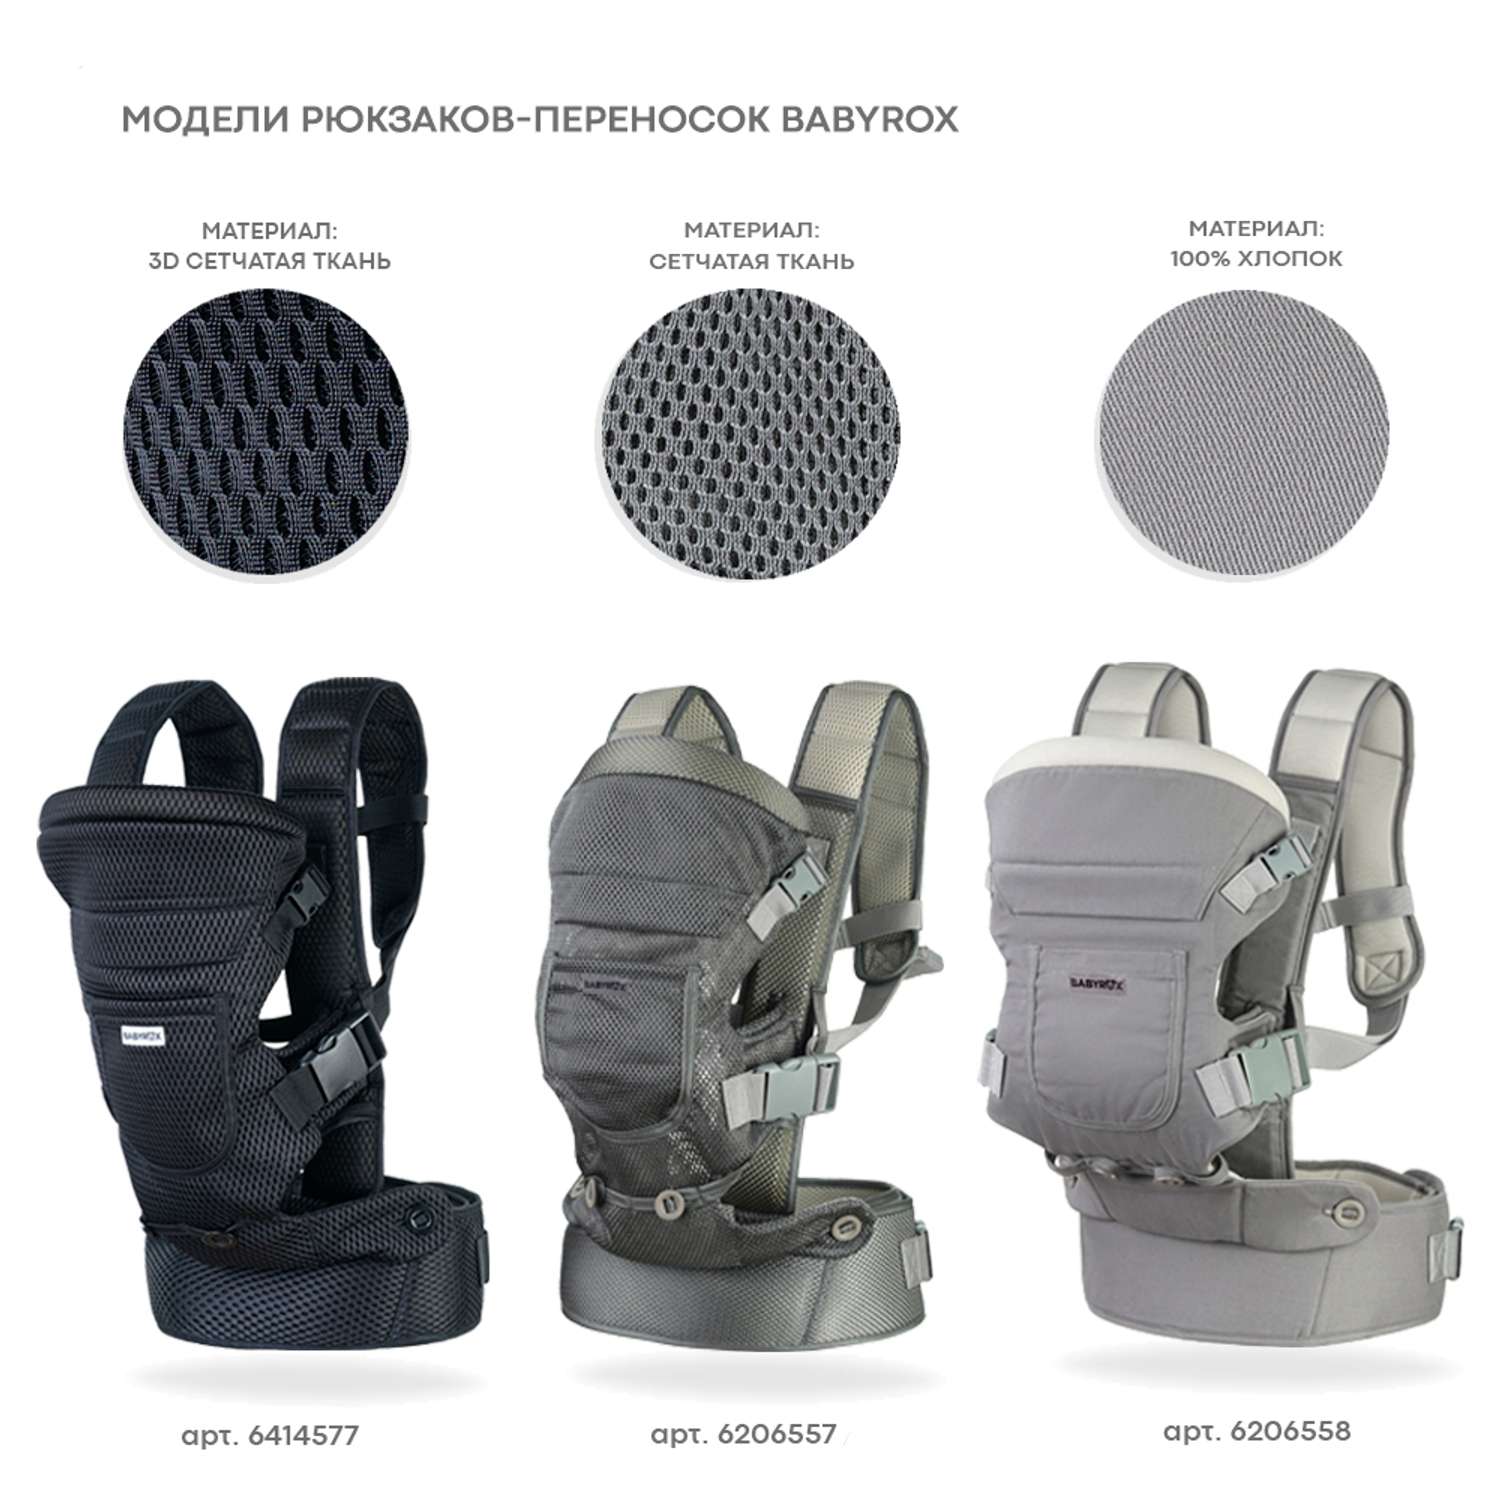 Рюкзак-переноска BabyRox Comfort 3D Mesh - фото 8